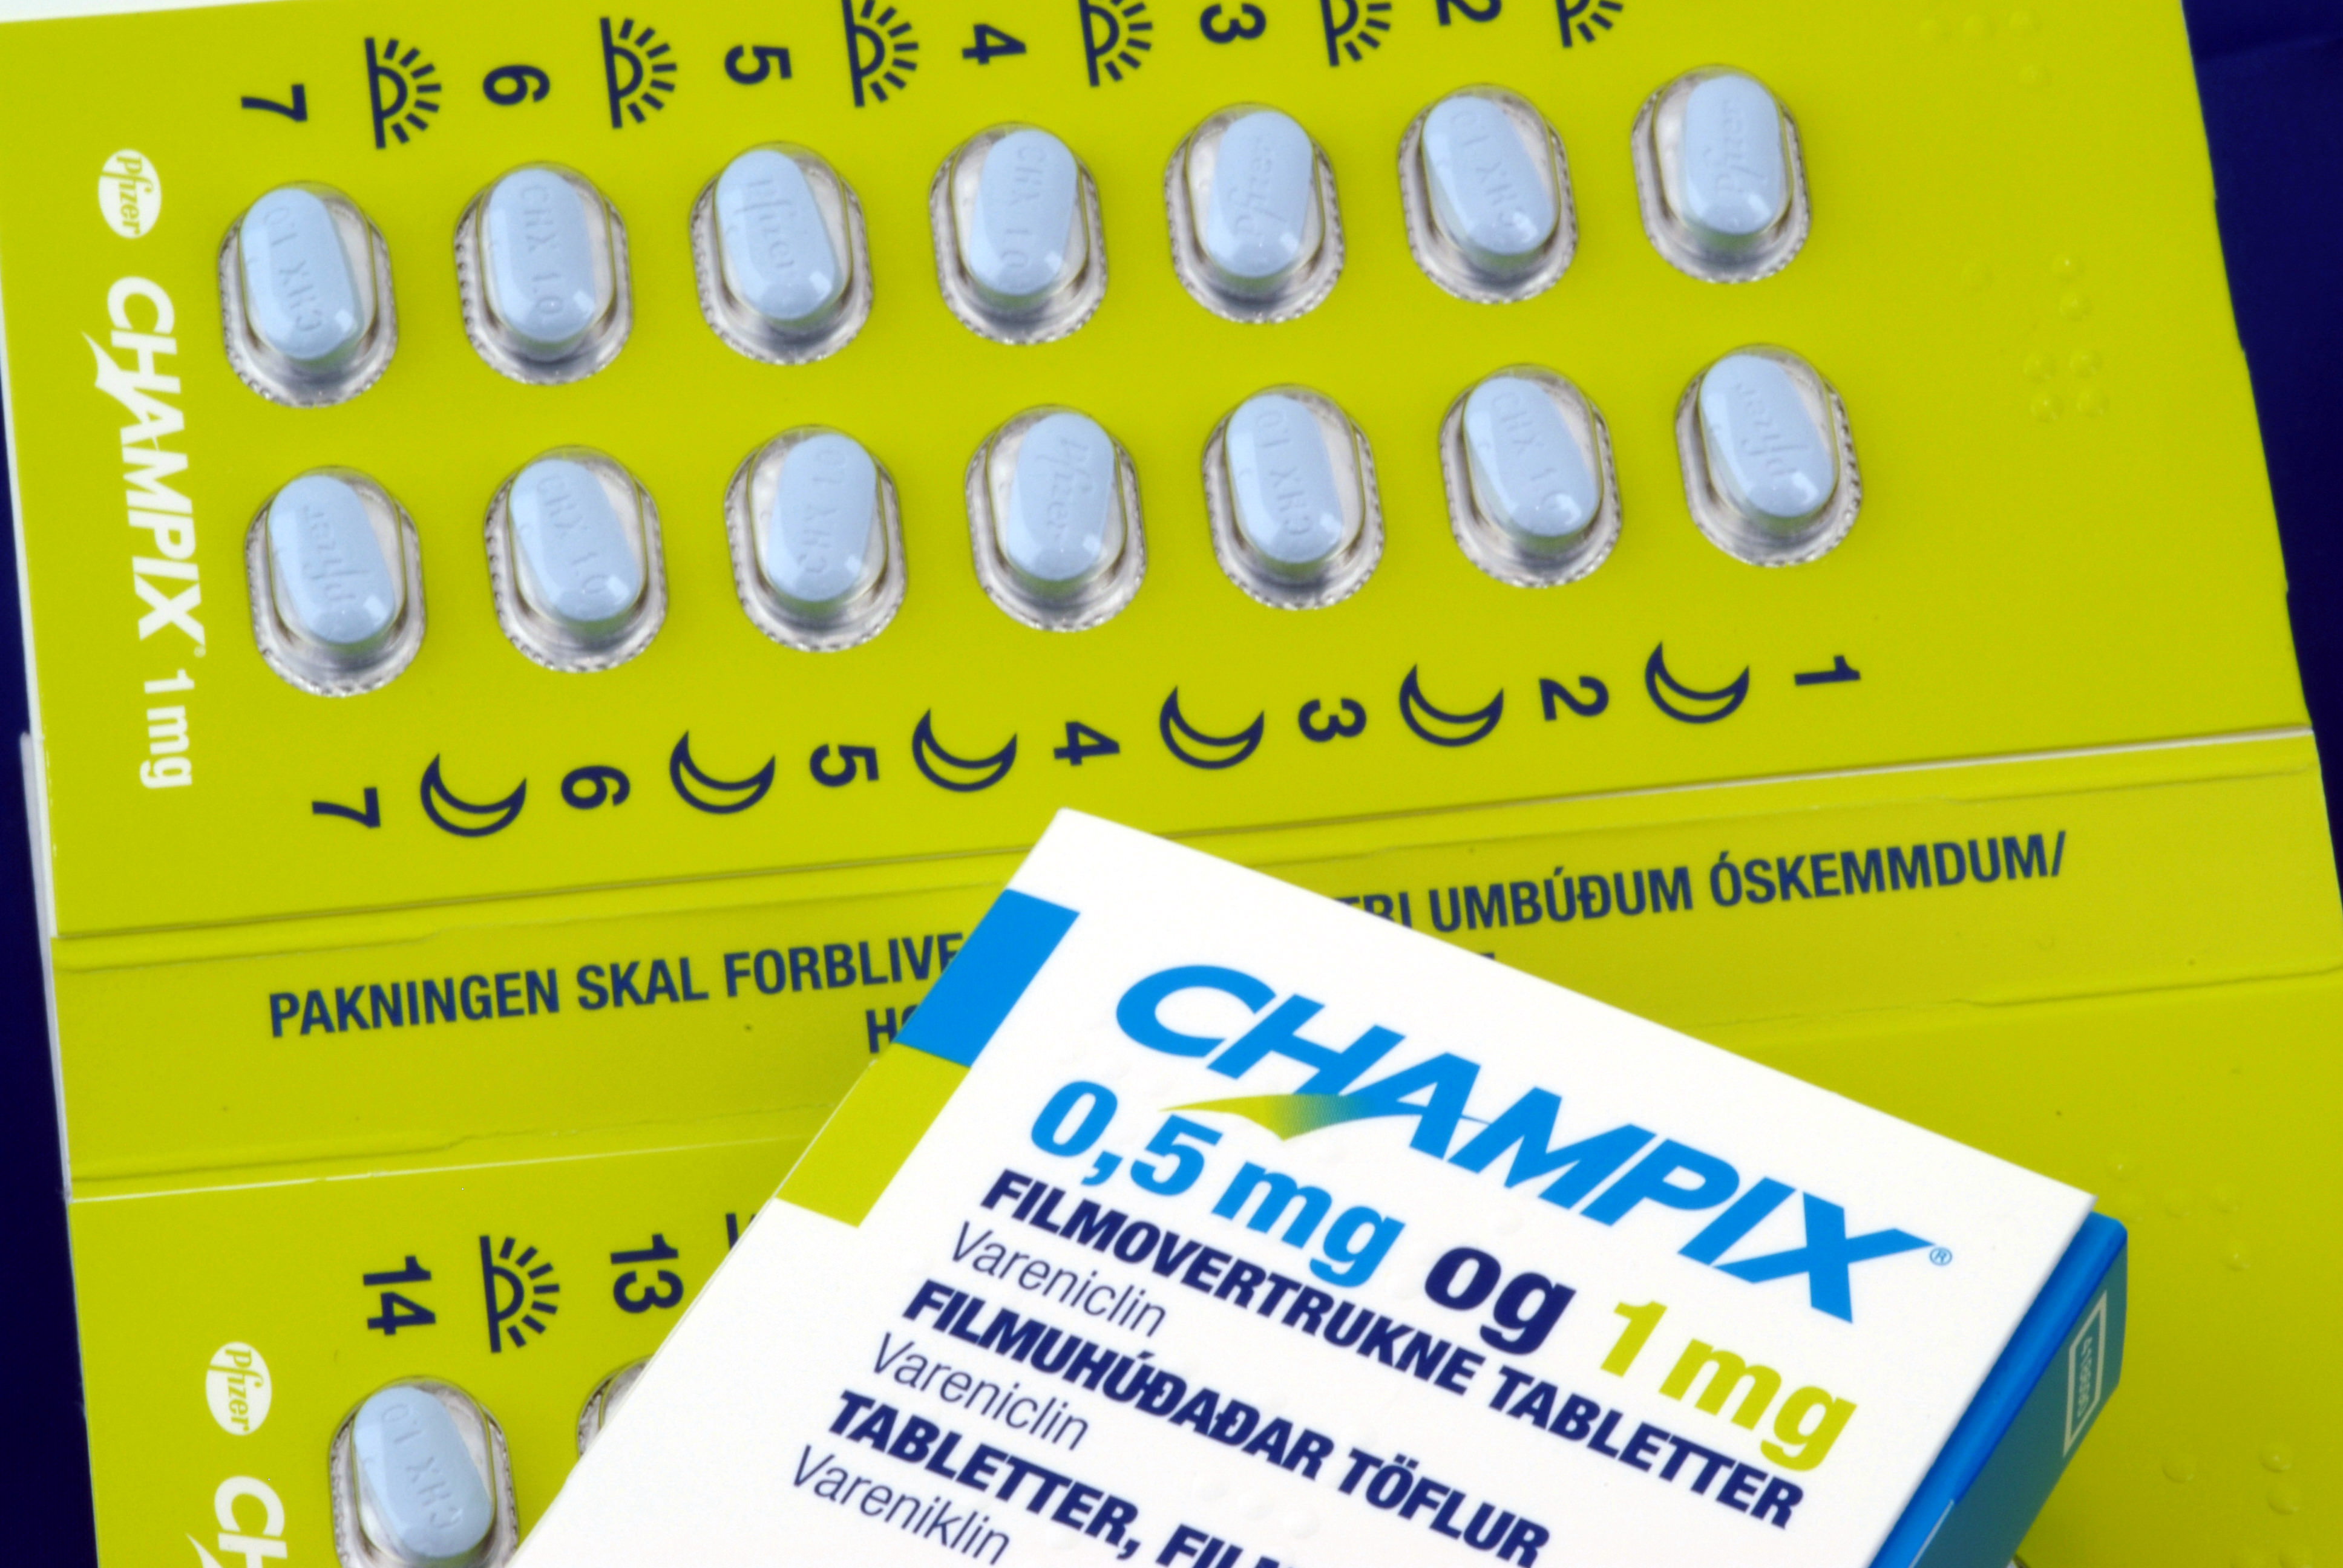 Чампикс (варениклин, champix) / Лекарственные средства